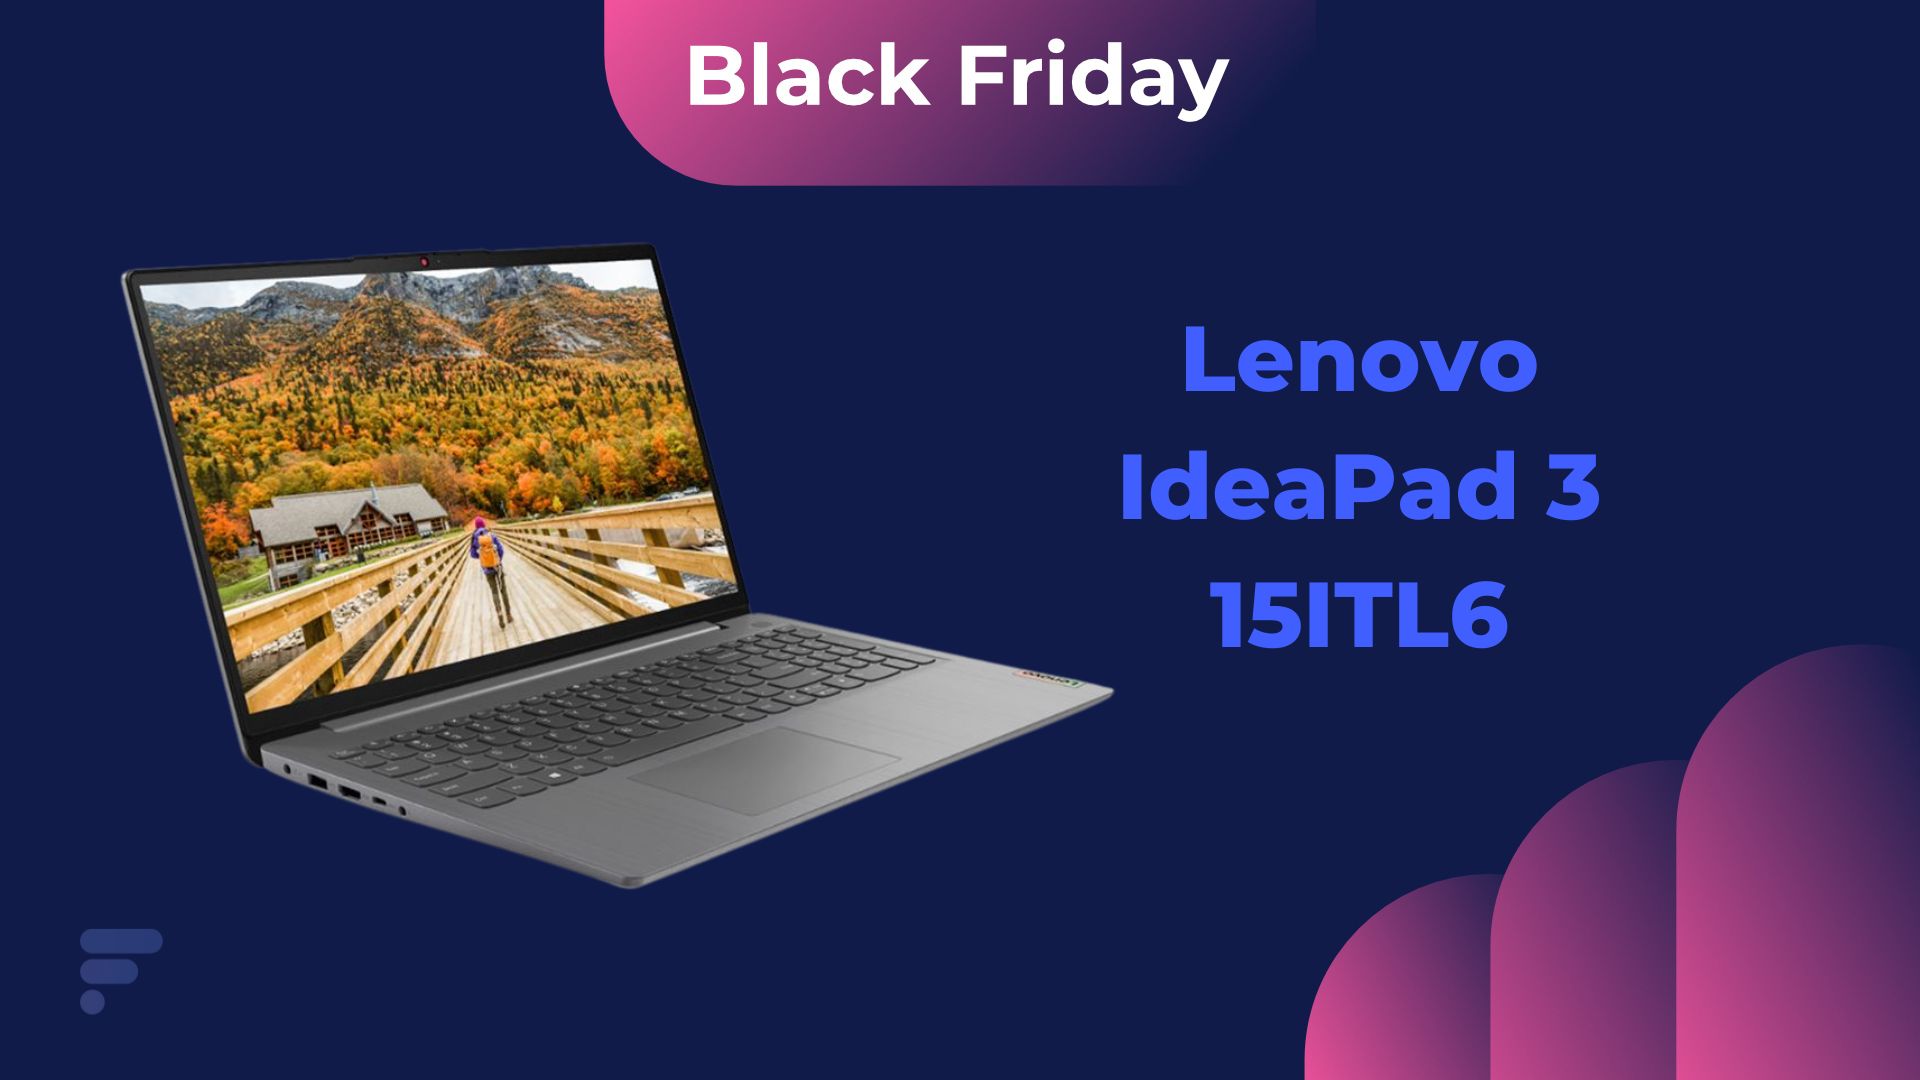 À -31%, ce Lenovo IdeaPad 3 est la bonne affaire du Black Friday côté laptop